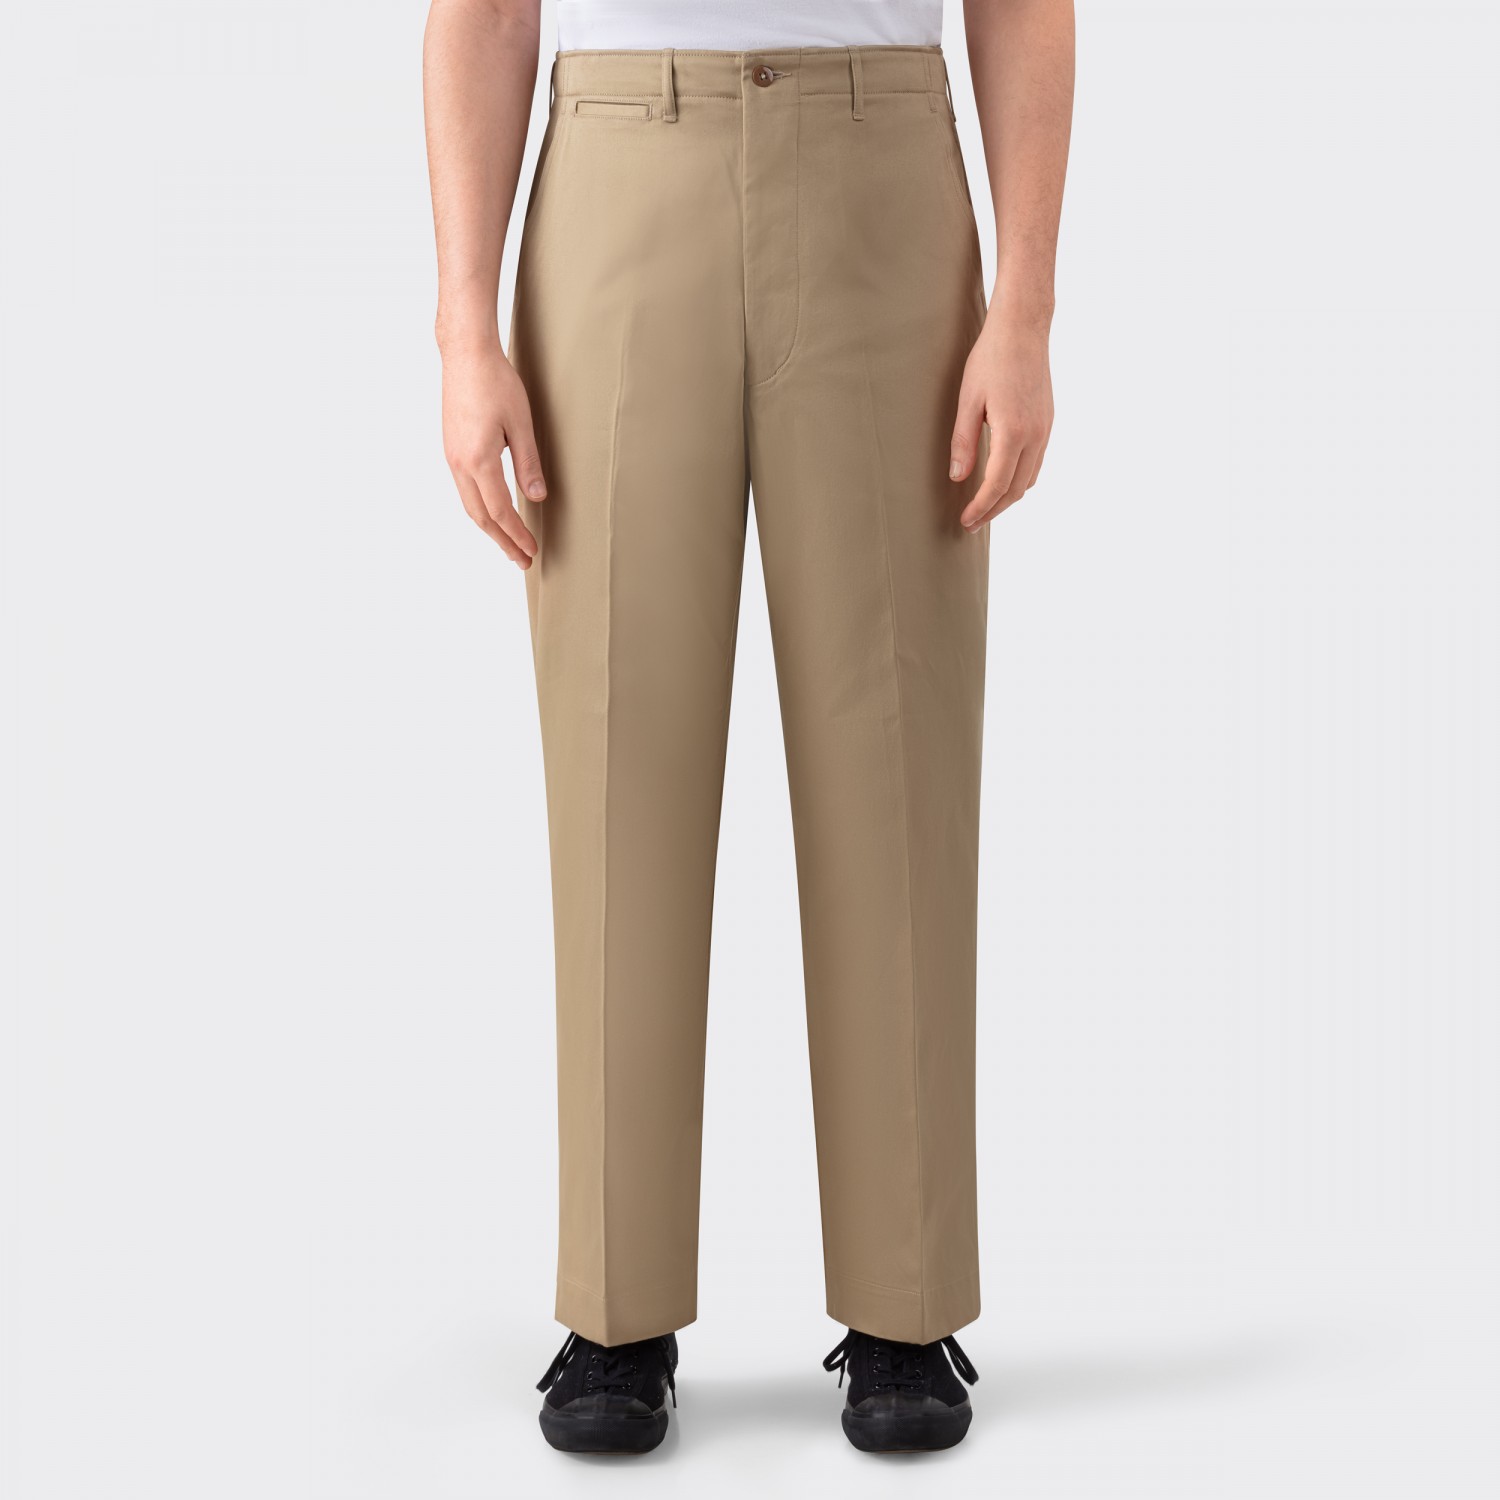 M1945 West Point Trousers : Khaki